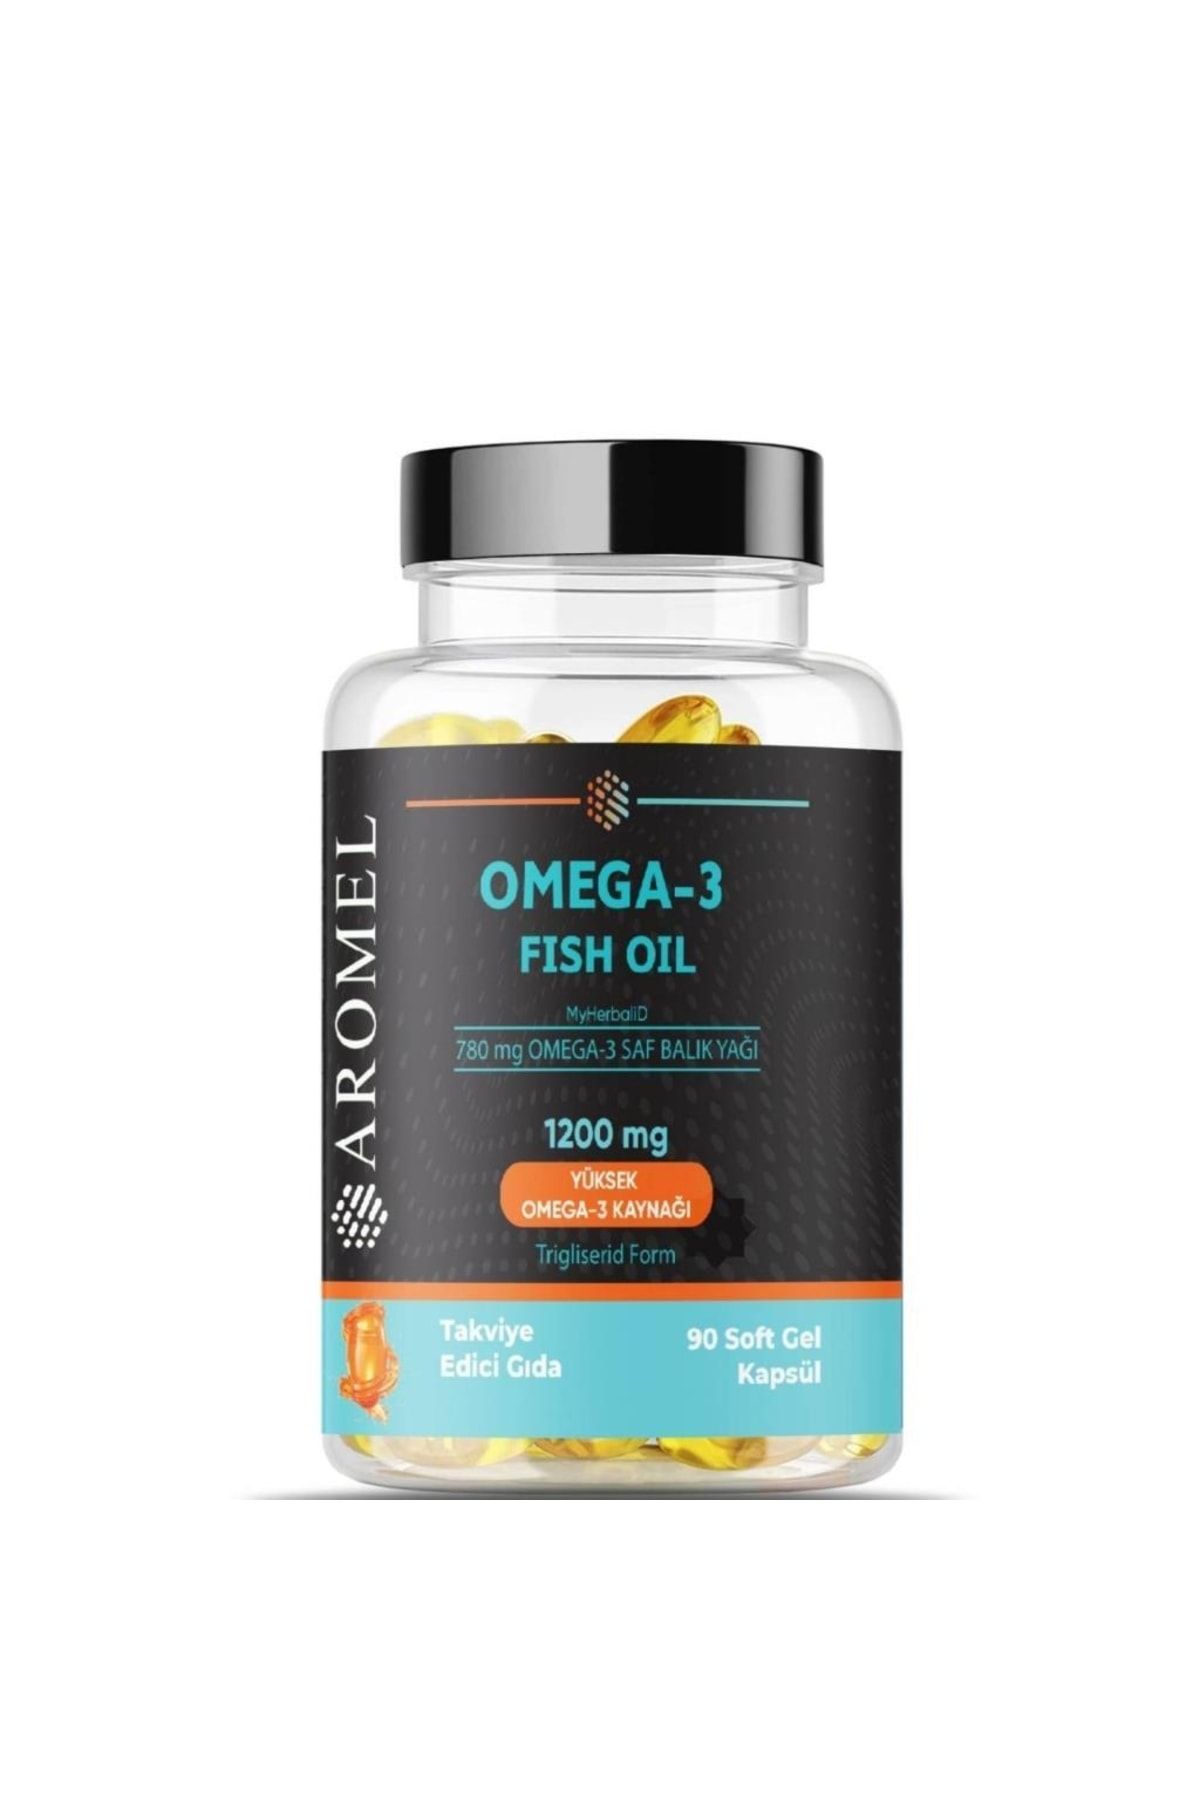 Aromel Omega 3 Balık Yağı 90 Adet Softgel ?1200 mg Yüksek Omega Kaynağı